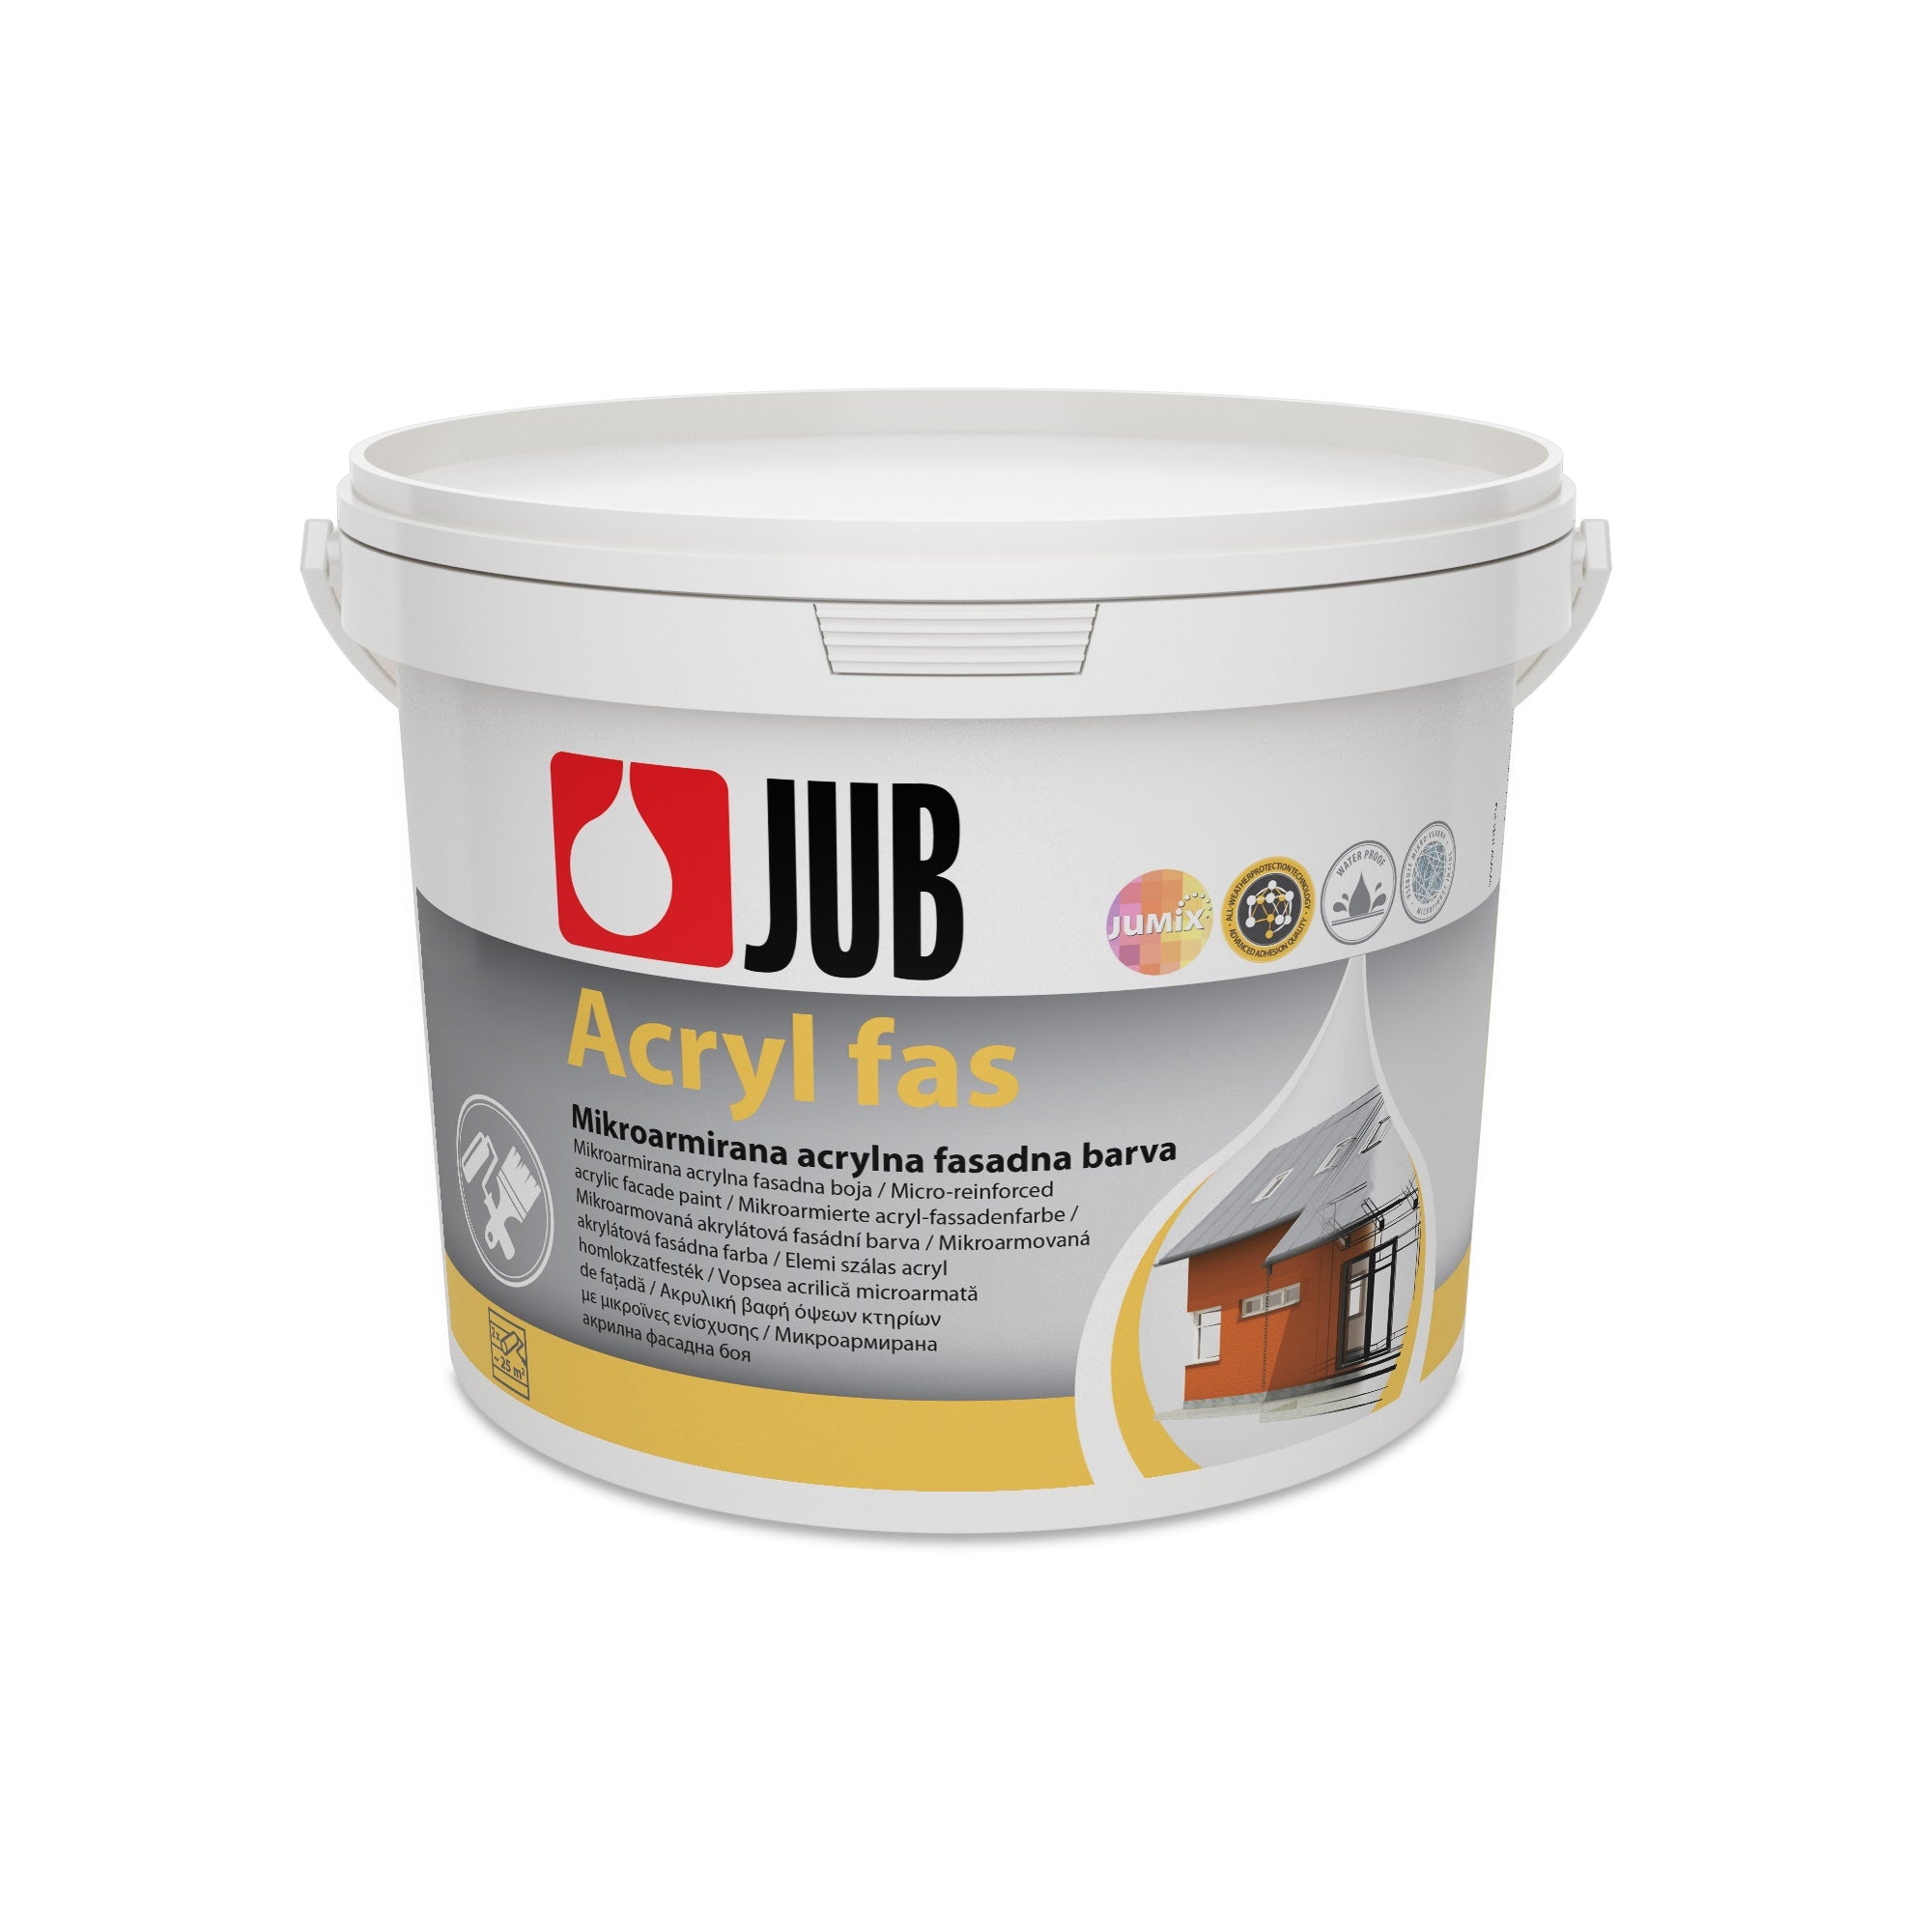 JUB Acryl fas mikroarmovaná akrylátová fasádna farba 5 l